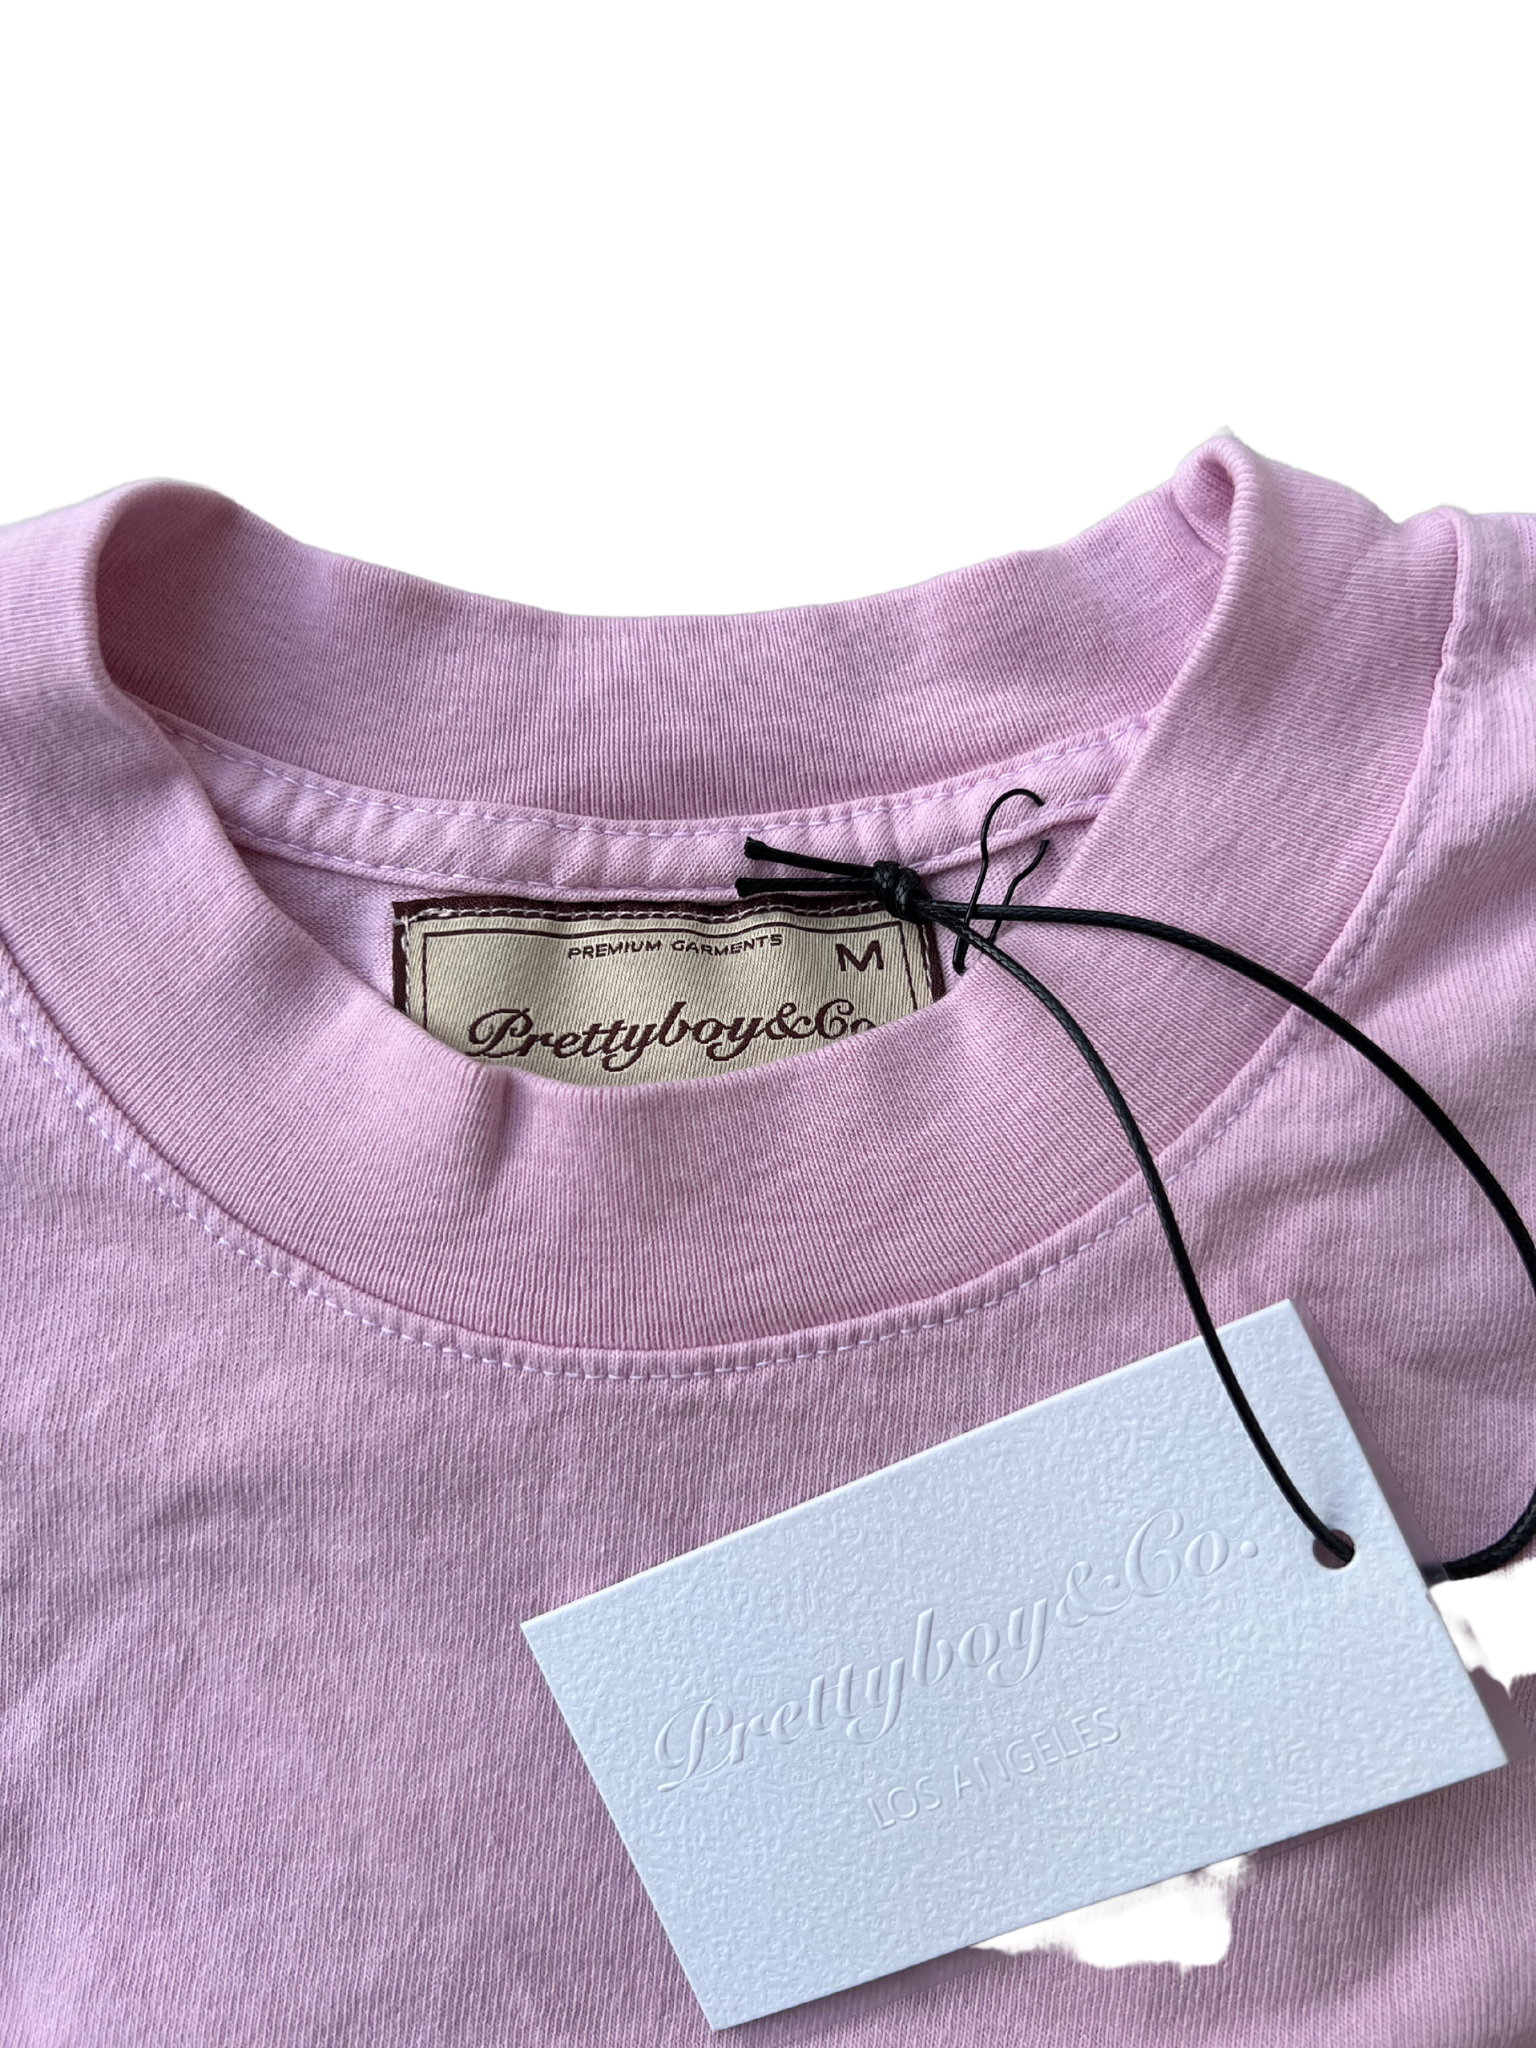 STT Blush Pink T-Shirt/Crop Top